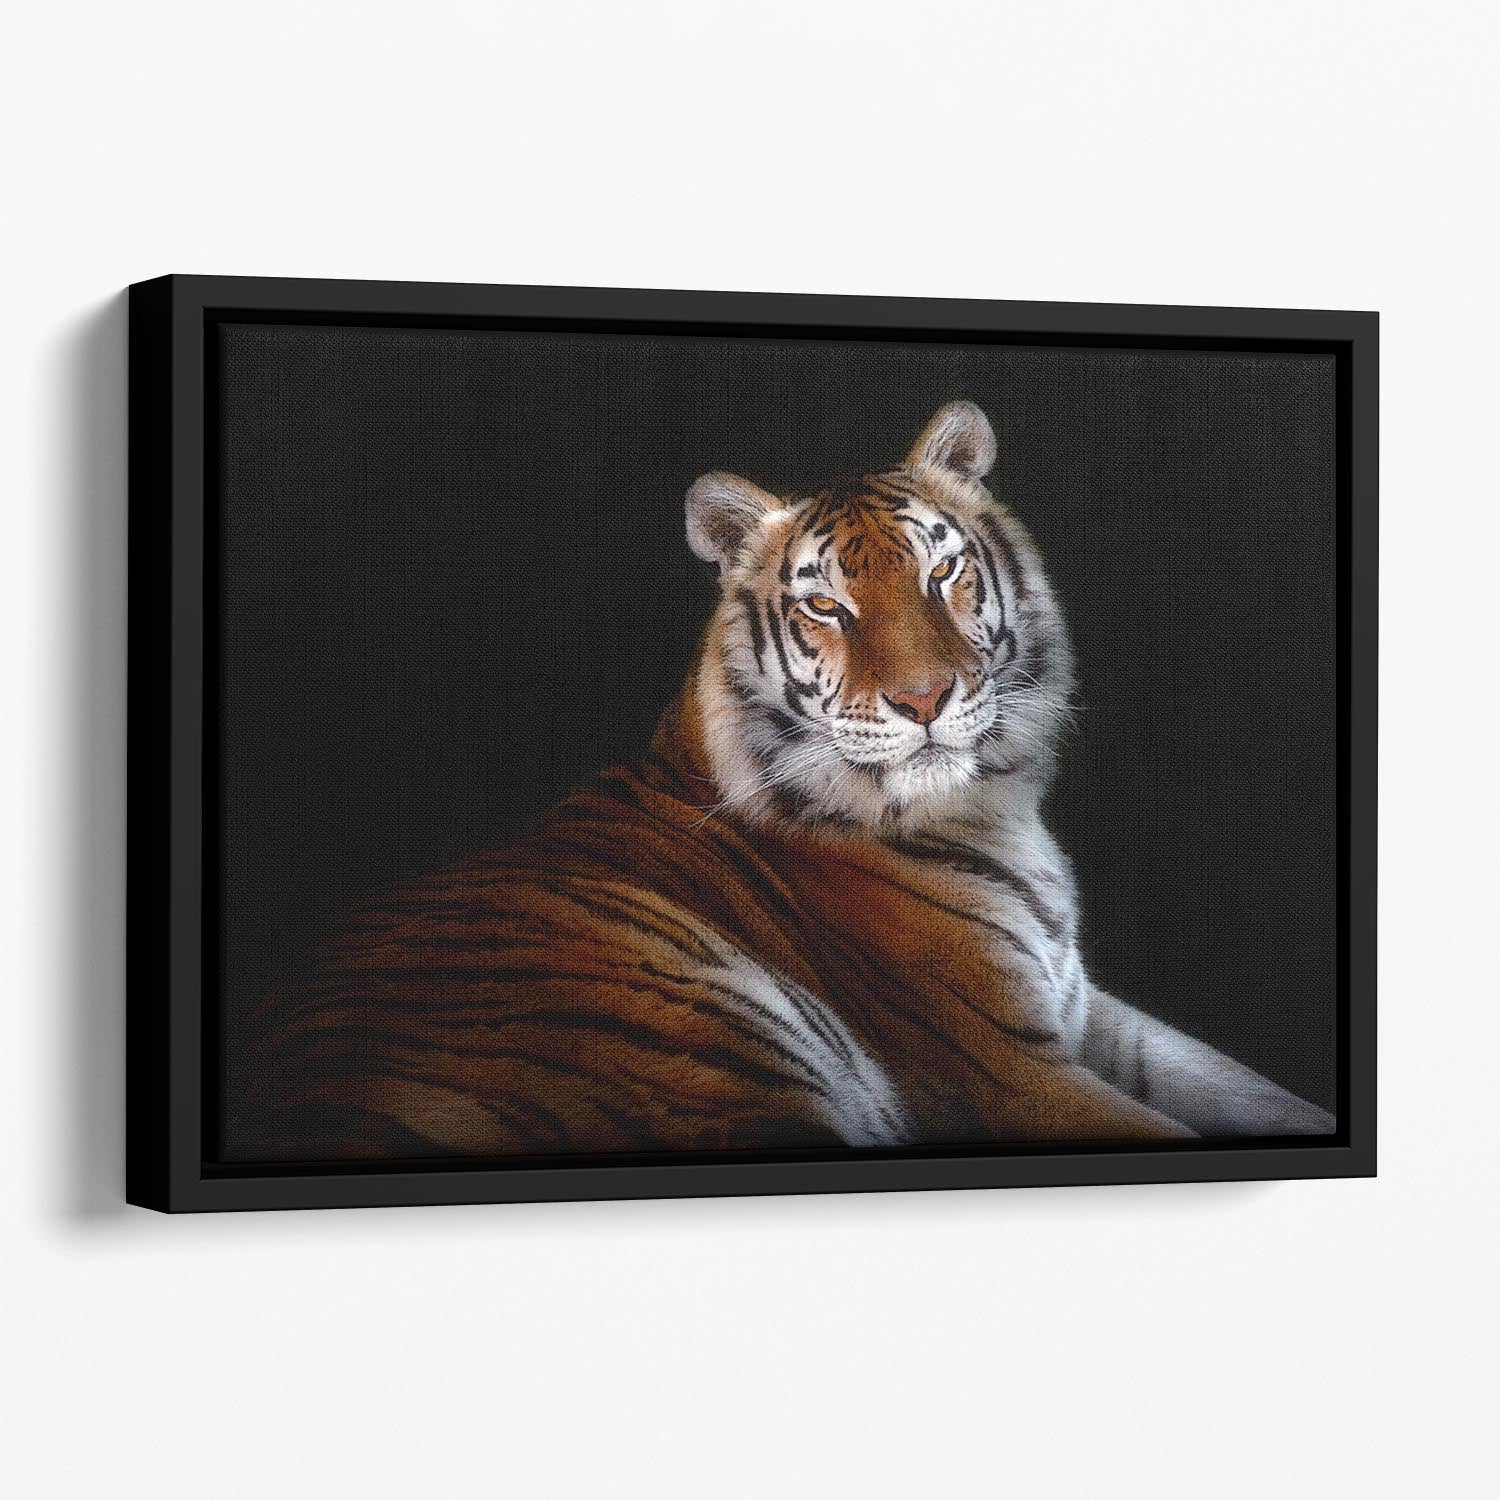 Serenity Tiger Floating Framed Canvas - Canvas Art Rocks - 1